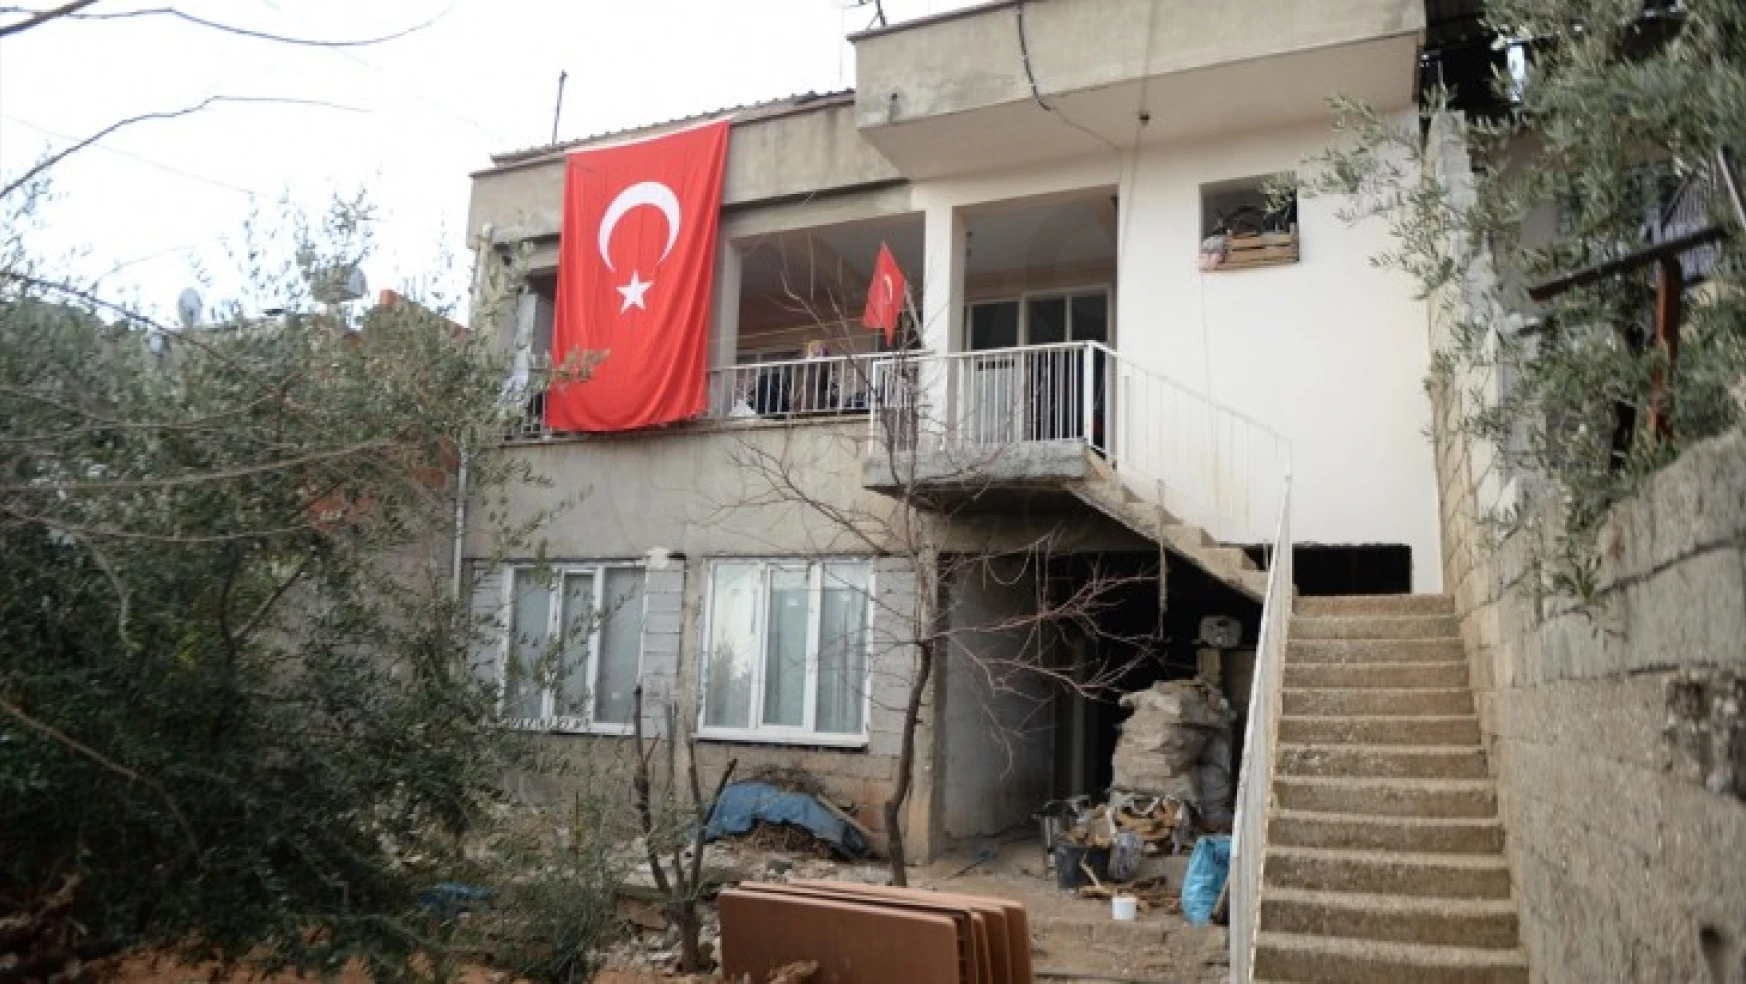 Şehit Uzman Çavuş Sarı'nın evine Türk bayrağı asıldı